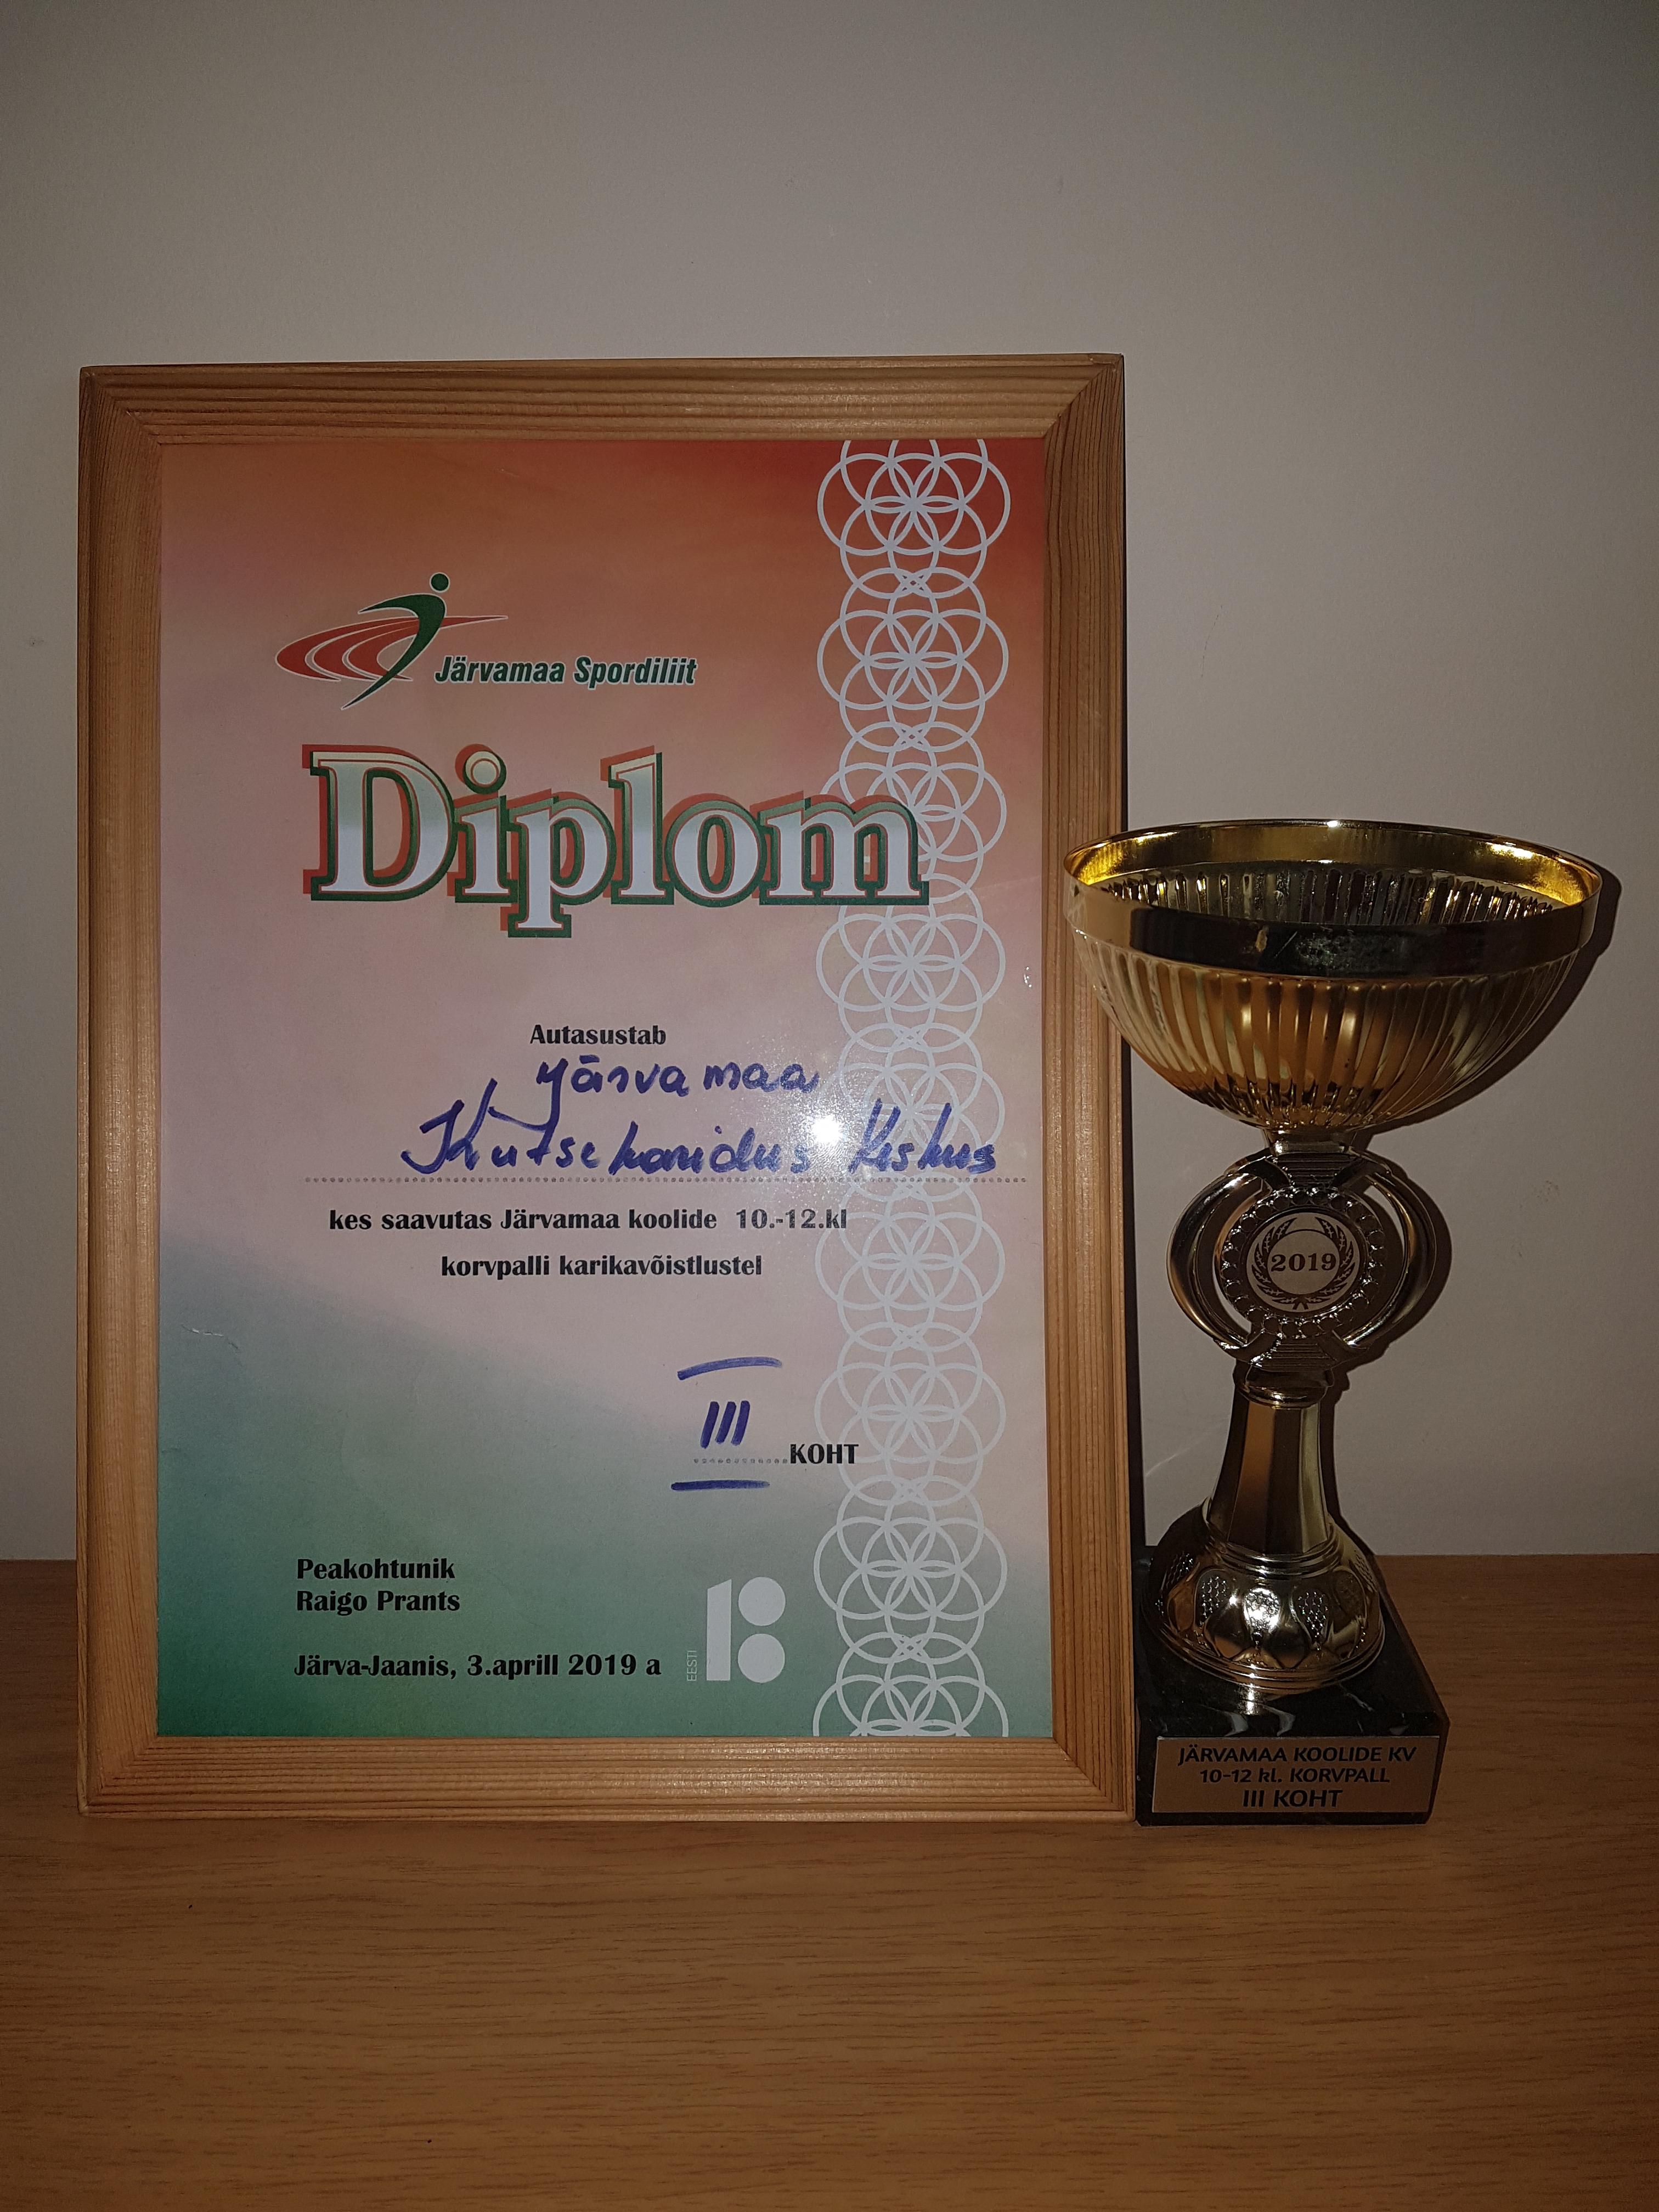 Järvamaa Kutsehariduskeskuse korvpalli võistkond saavutas Järvamaa koolide 10.-12.klasside vahelisel korvpalli karikavõistlusel auhinnalise III.koha.